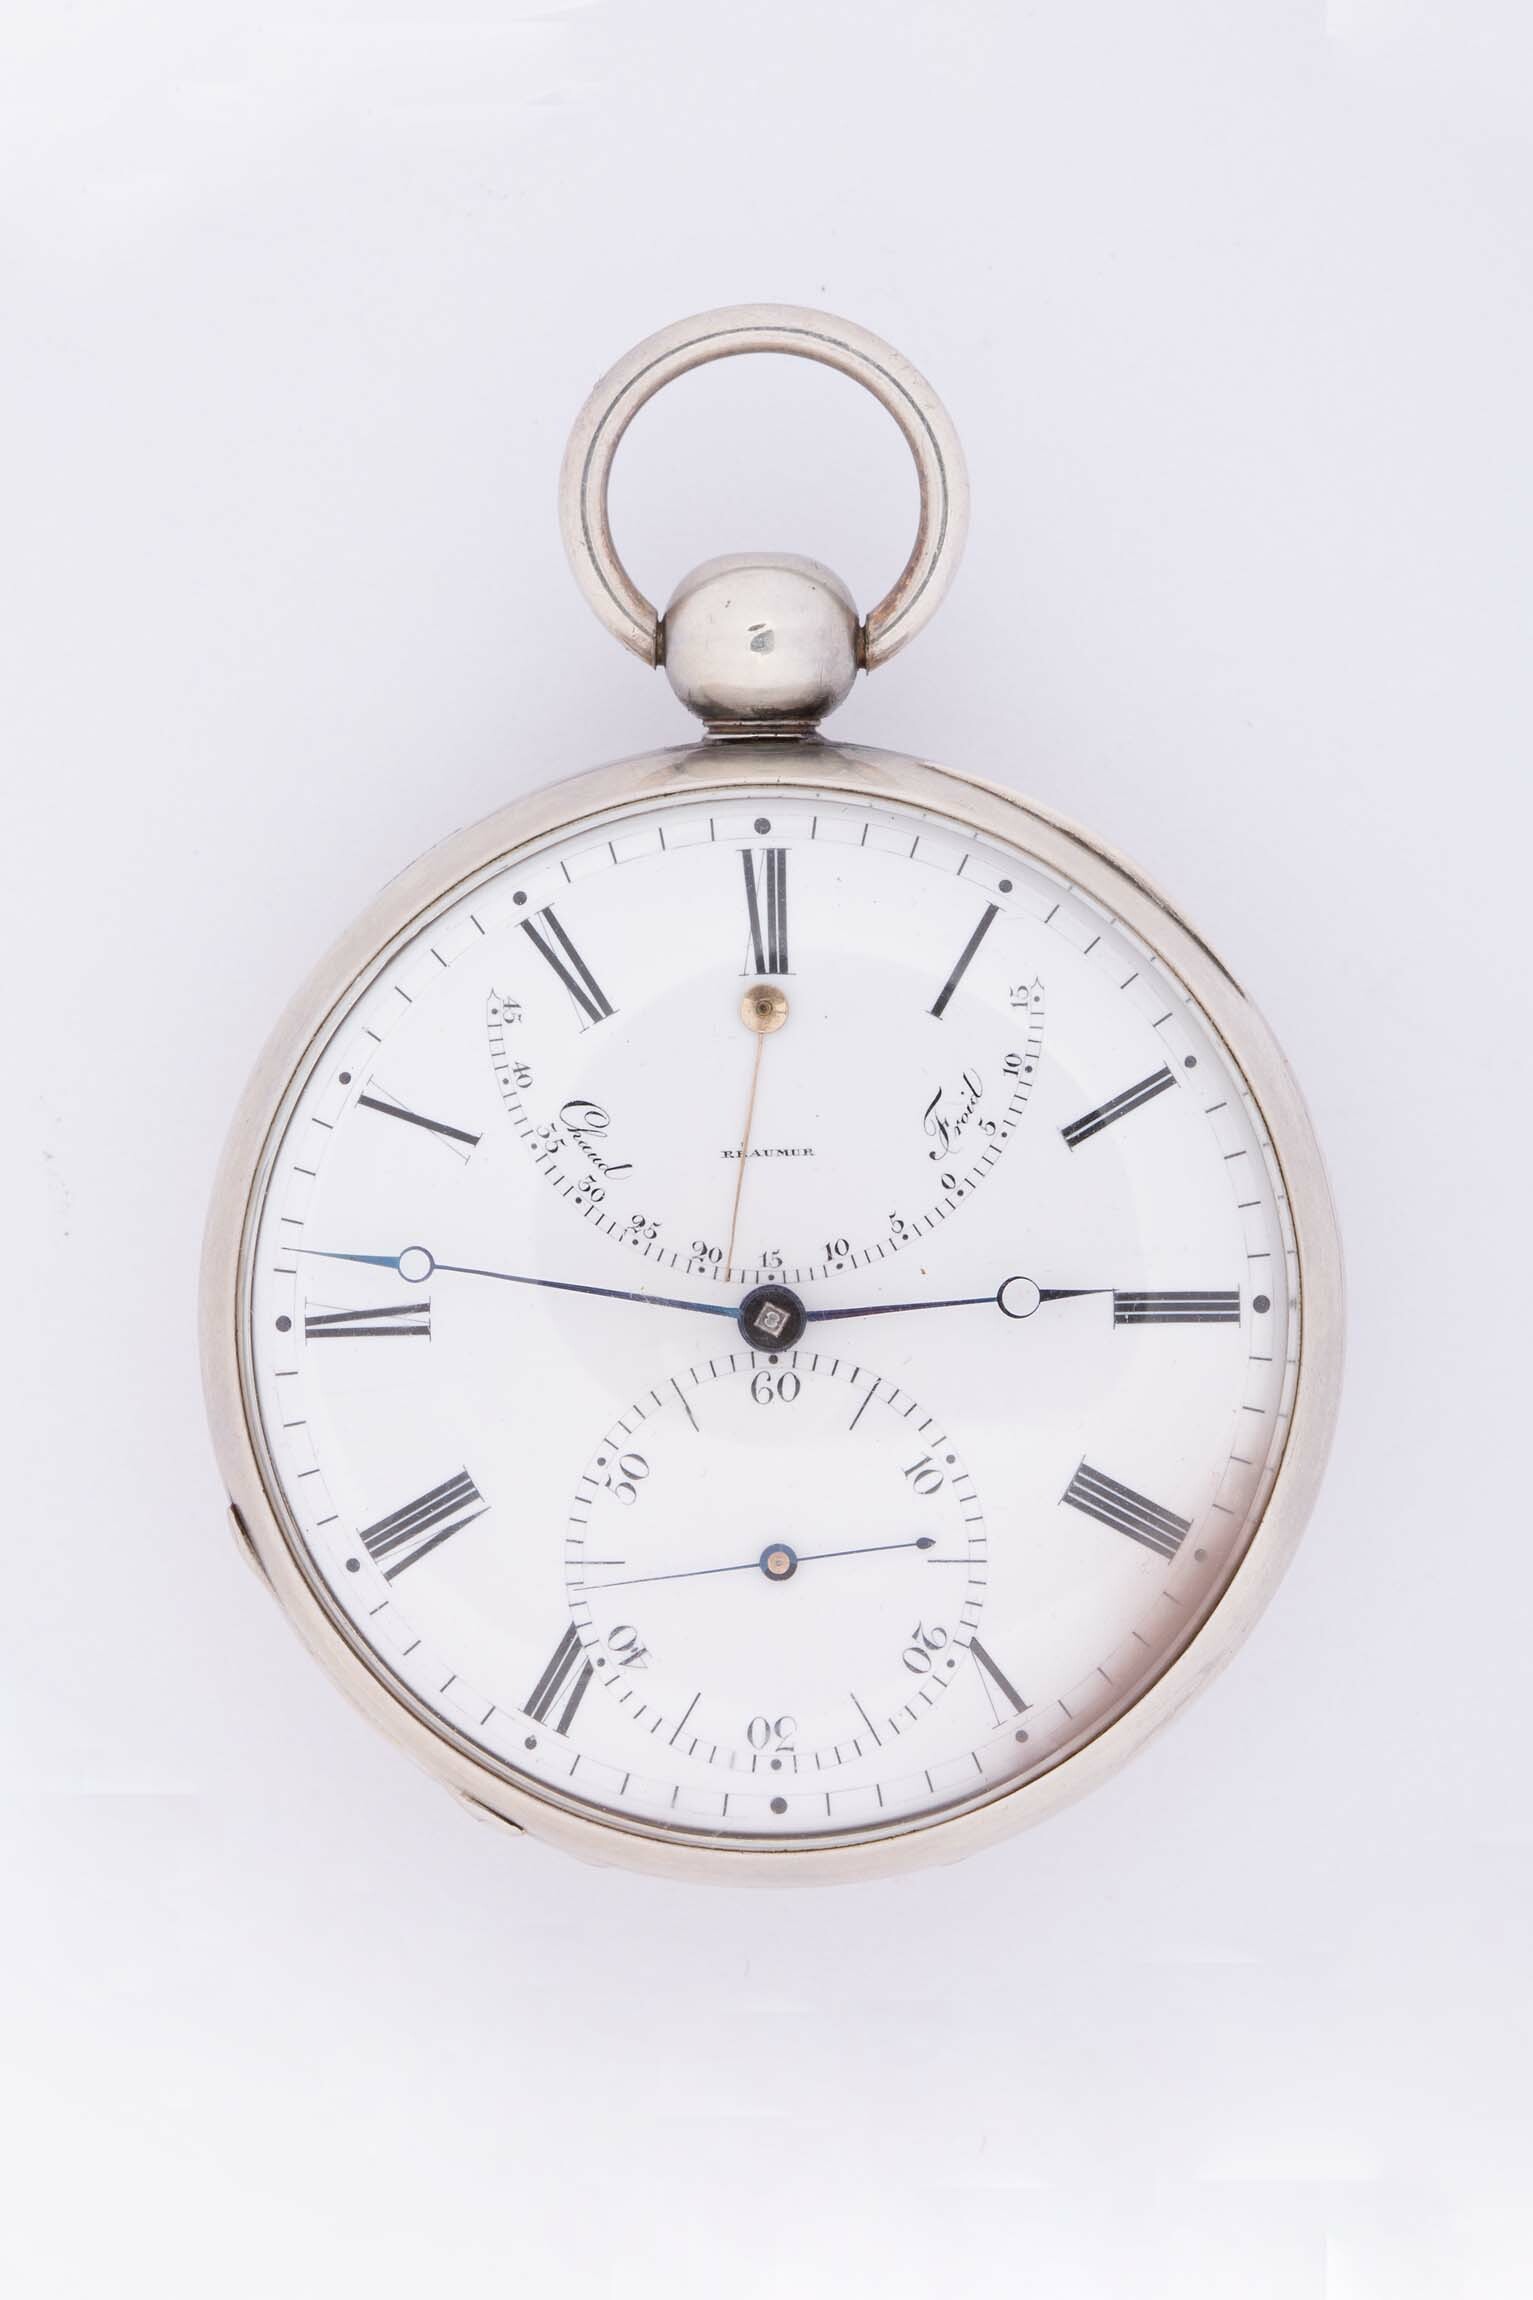 Taschenuhr, wohl Frankreich, um 1800 (Deutsches Uhrenmuseum CC BY-SA)